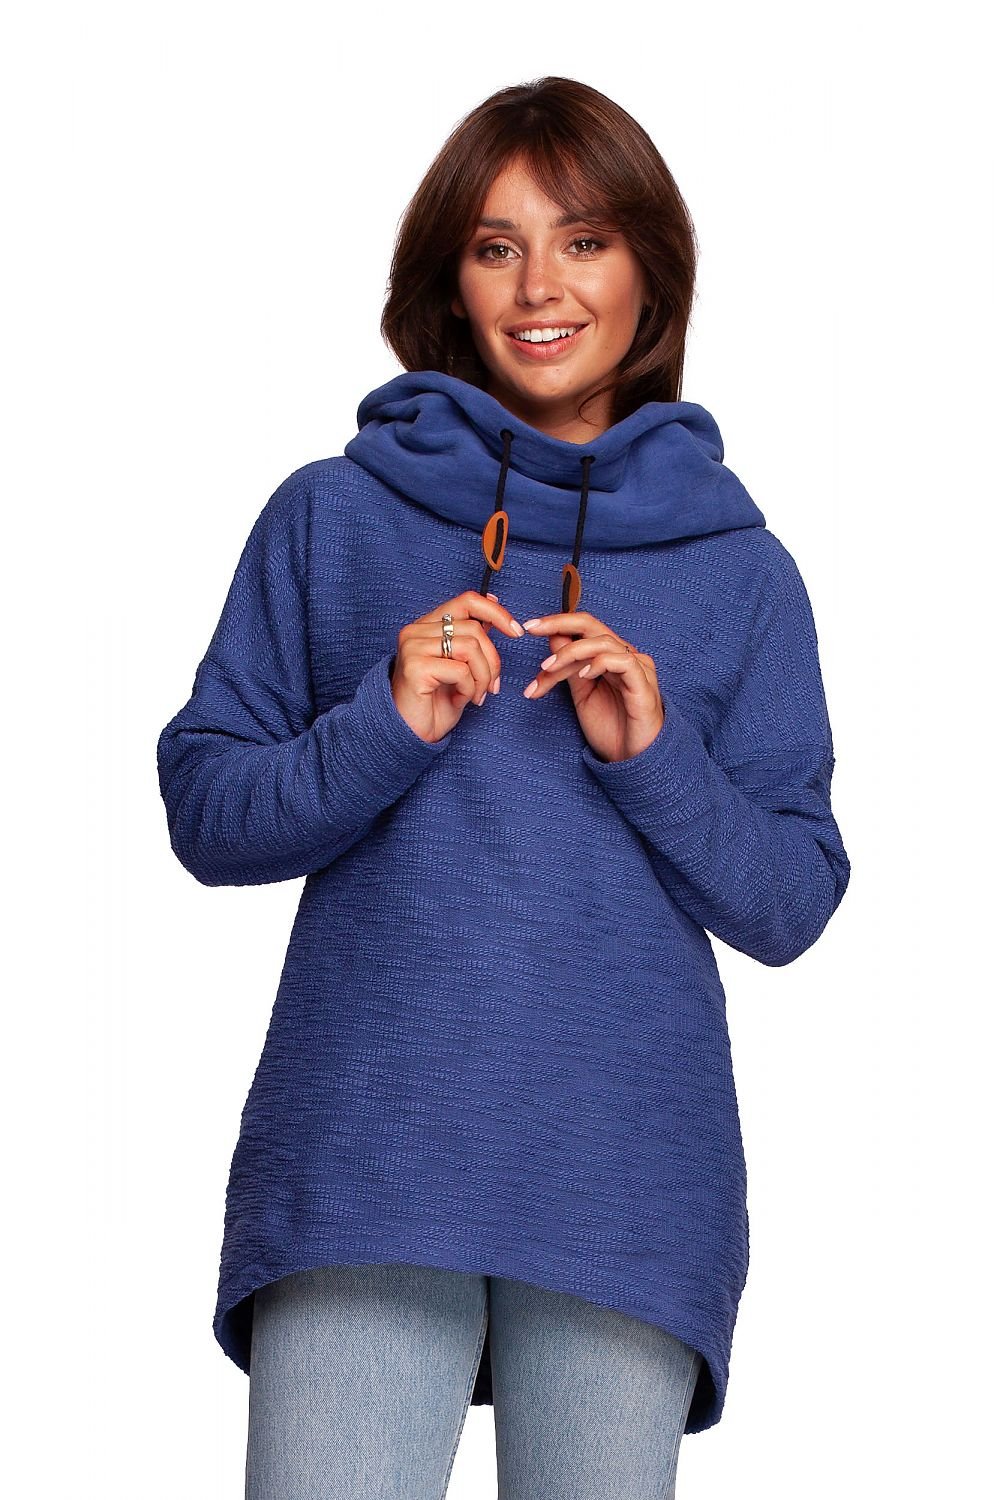 Sweatshirt model 170164 BeWear